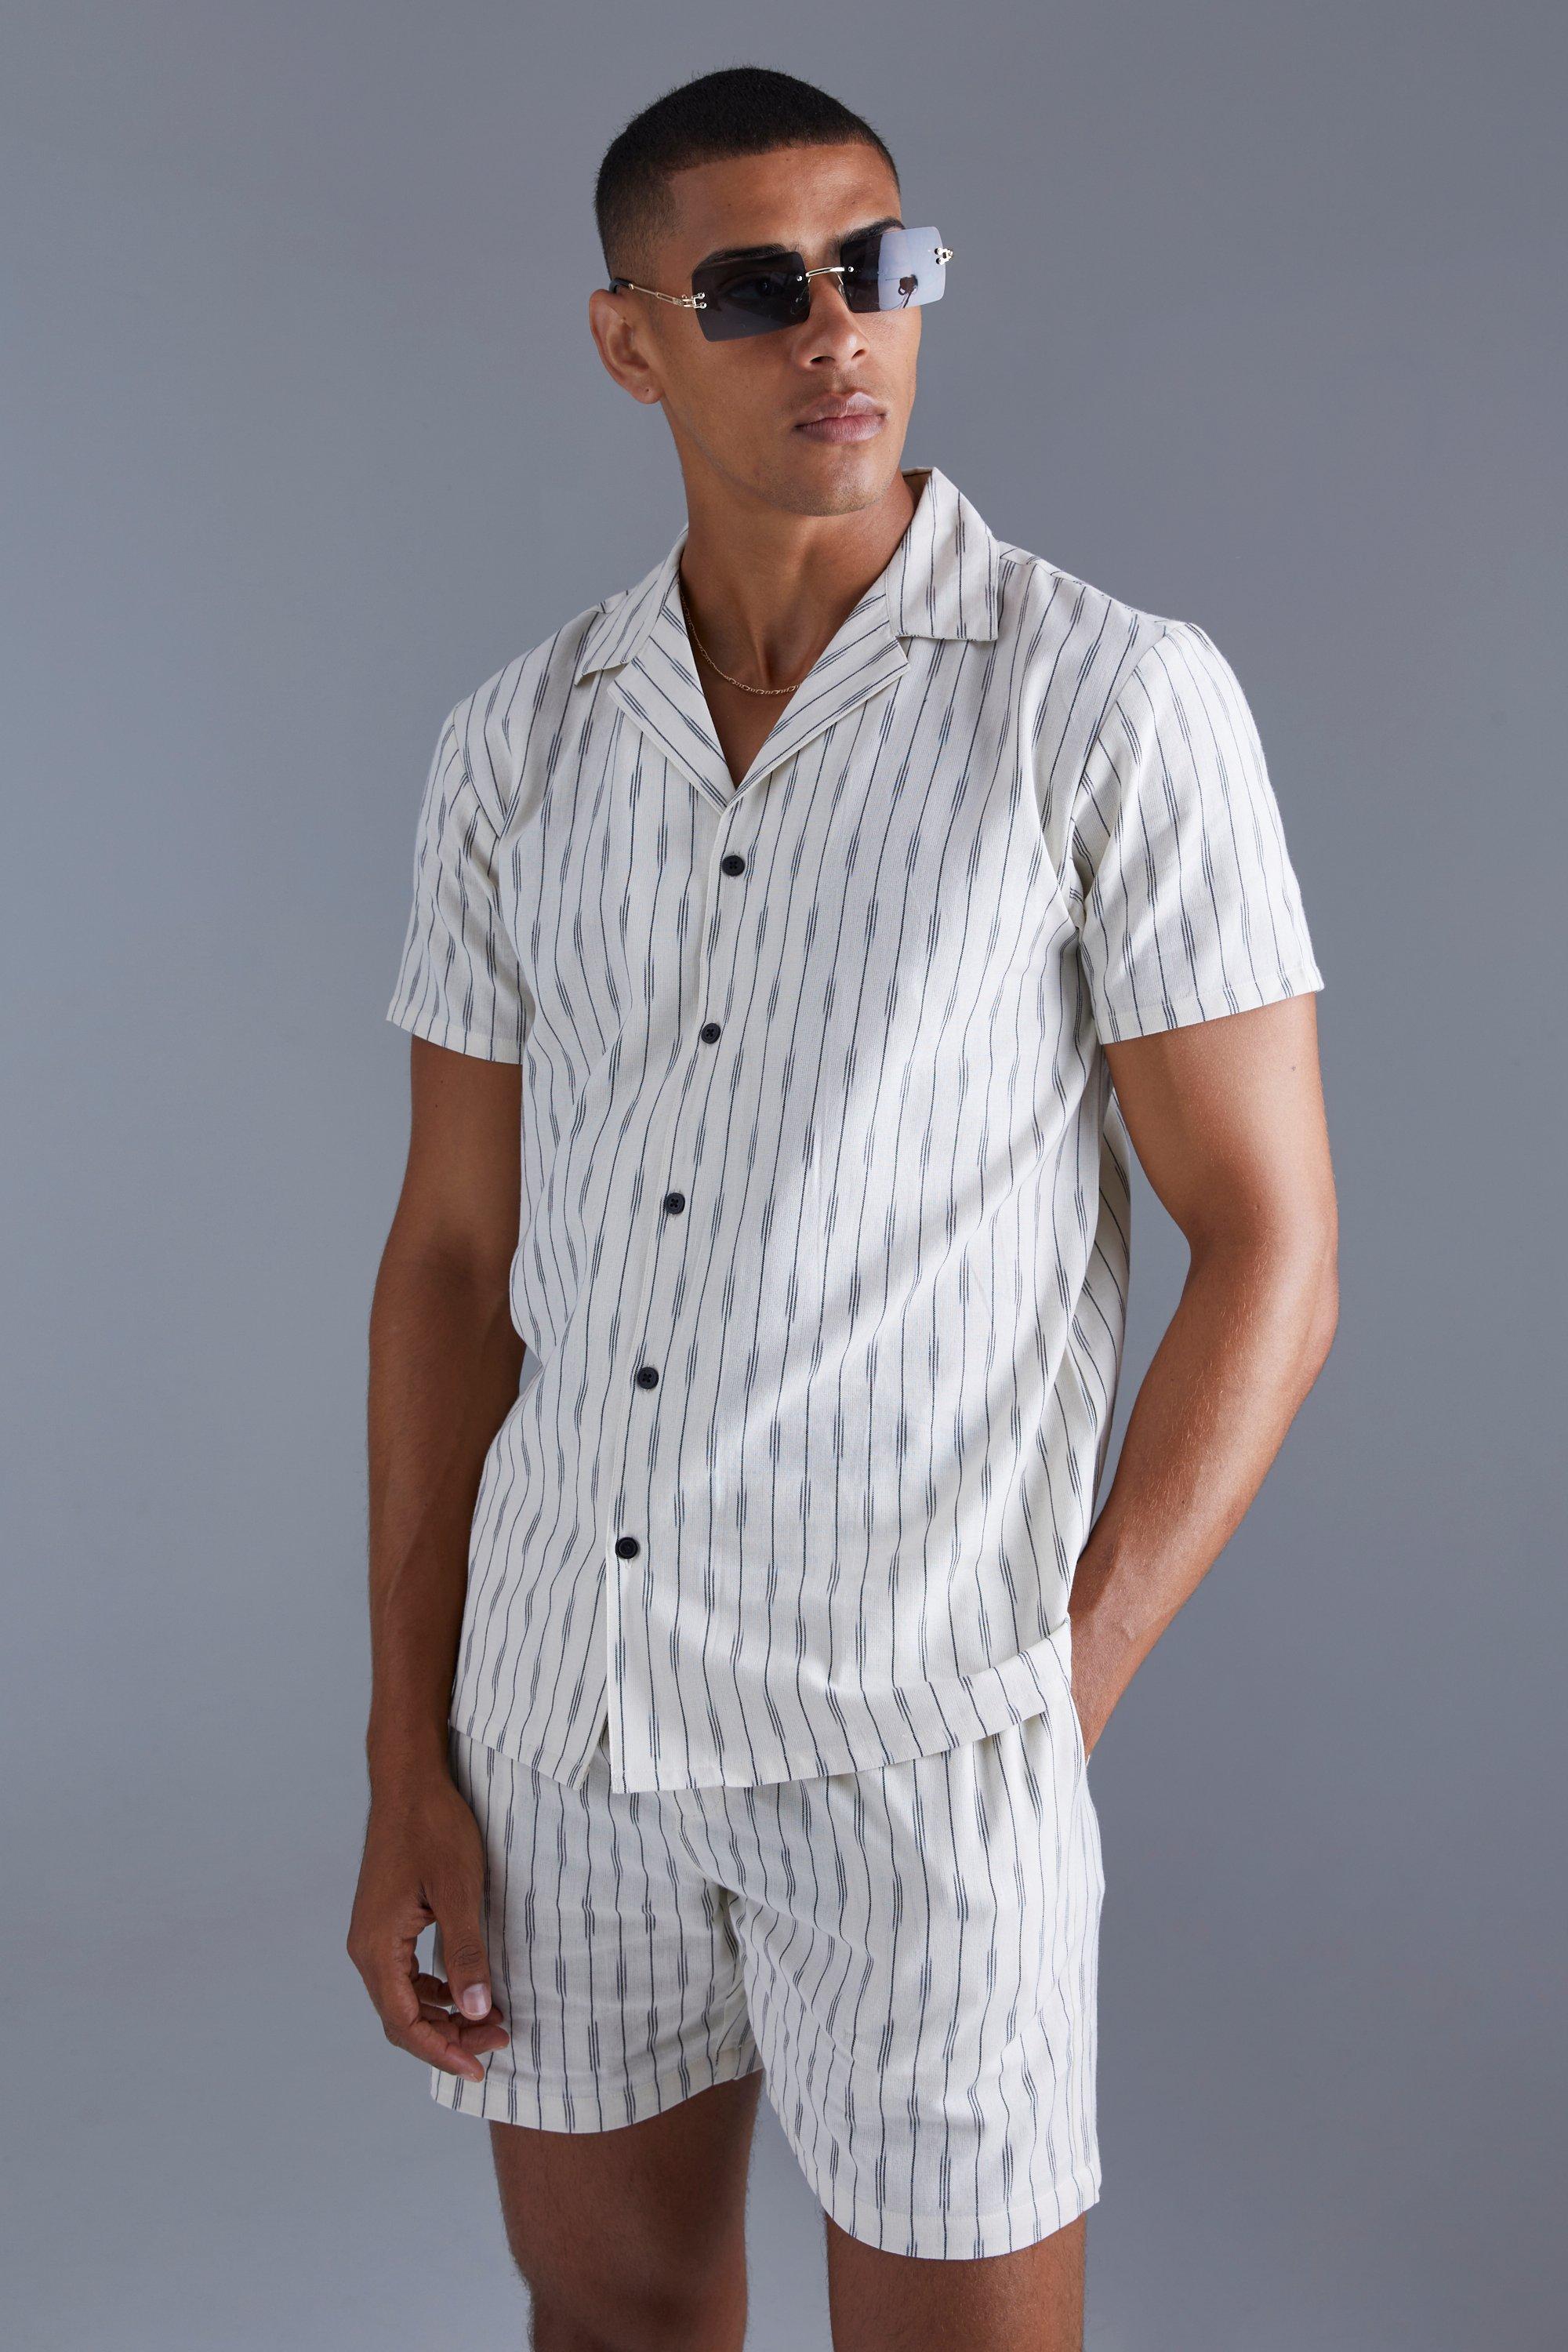 Short Sleeve Dash Stripe Shirt And Short